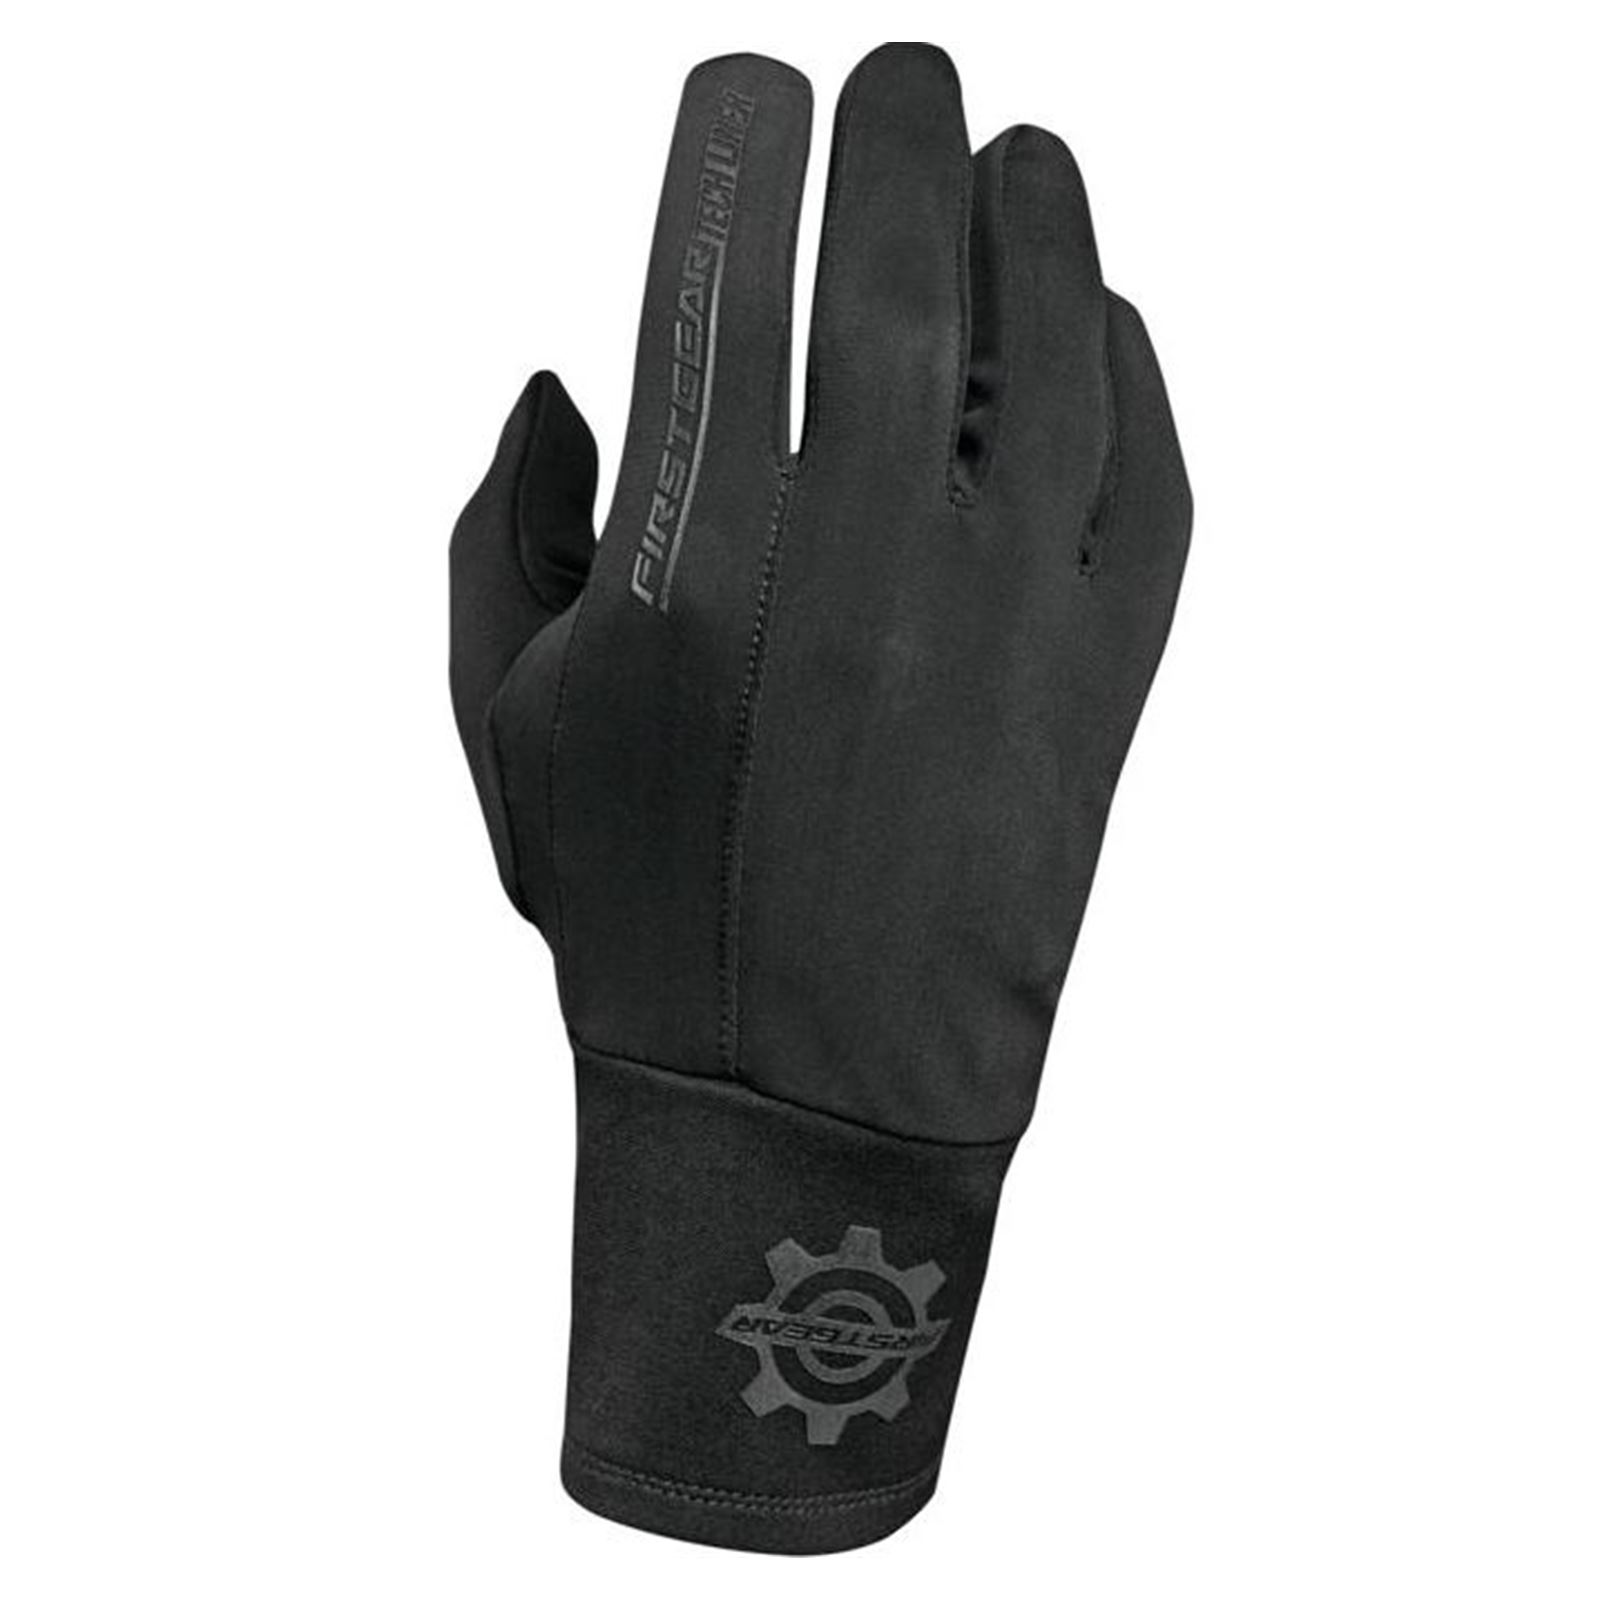 Firstgear Tech Glove Liner - Large